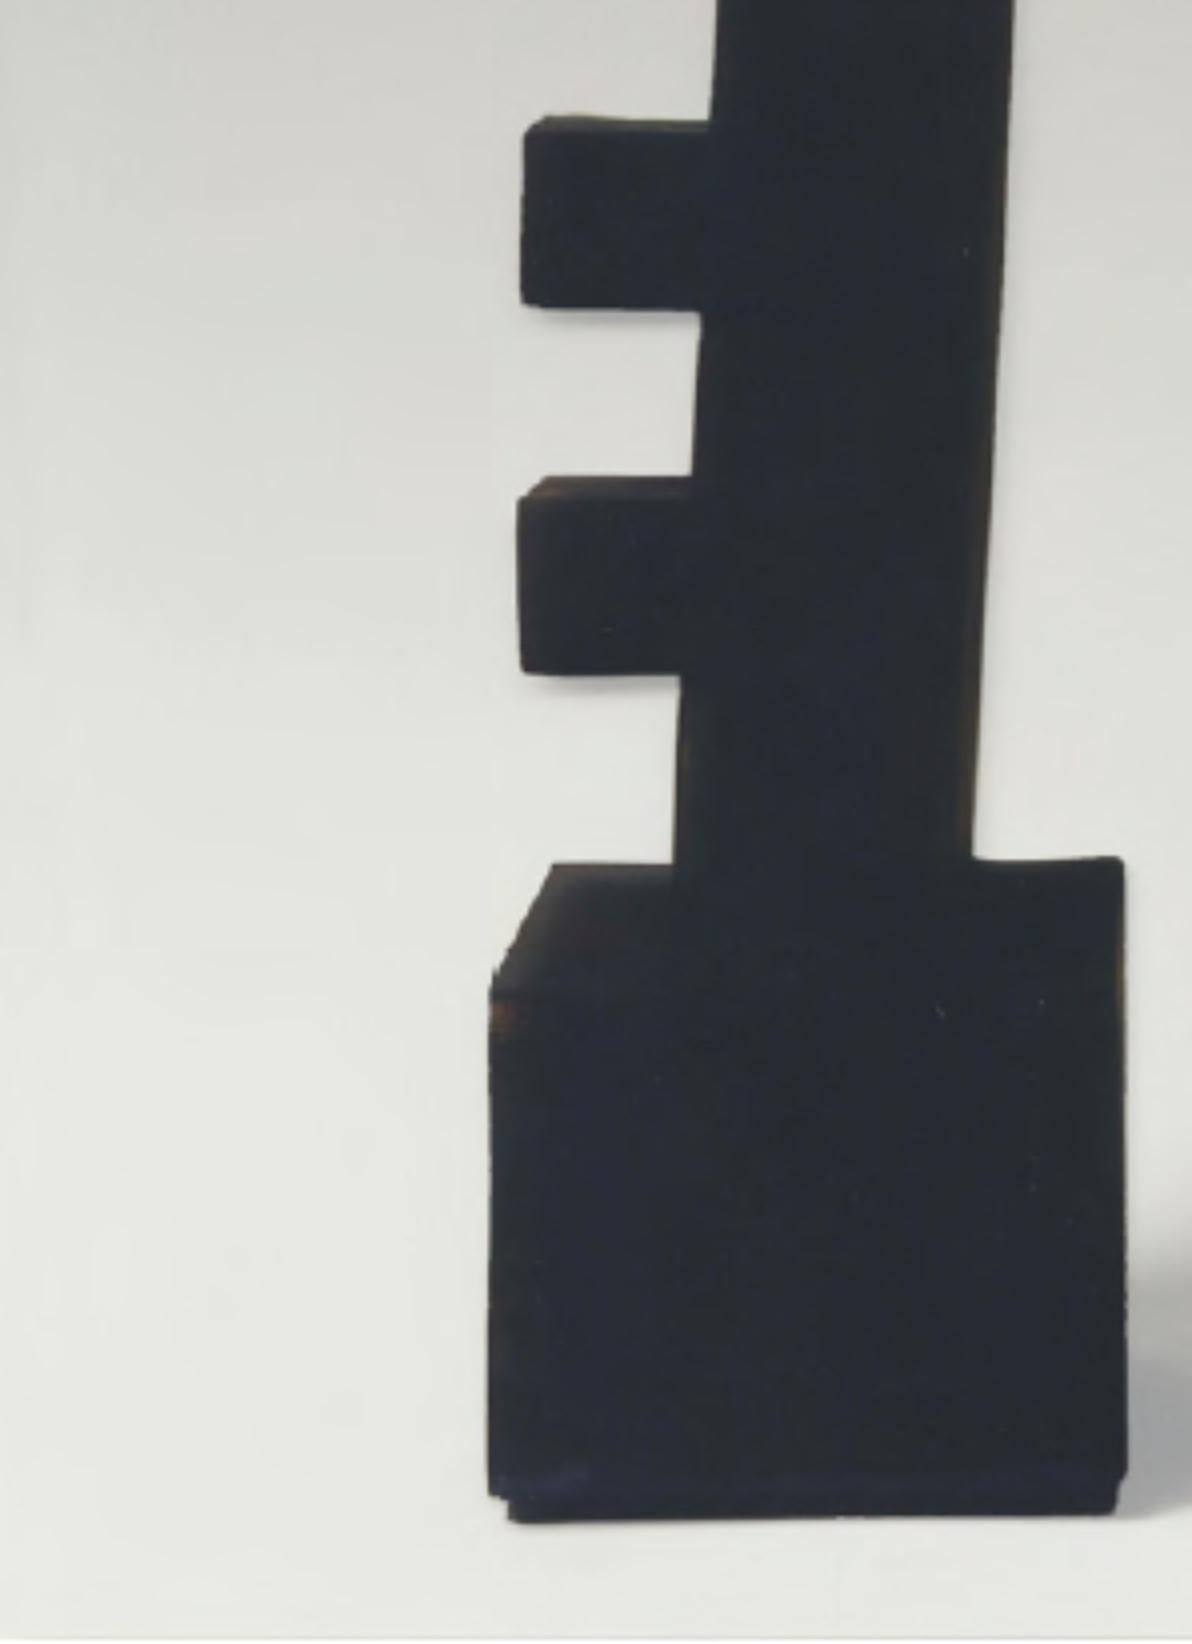 CF Te2.1 Terre von Caturegli Formica
Abmessungen: B 45 x H 65 cm
MATERIALIEN: Keramik

Terres, Dakar, Senegal, 1987-1991 

TERRES ist eine Serie von symbolischen Keramikskulpturen, die in Dakar, Senegal, im Atelier 